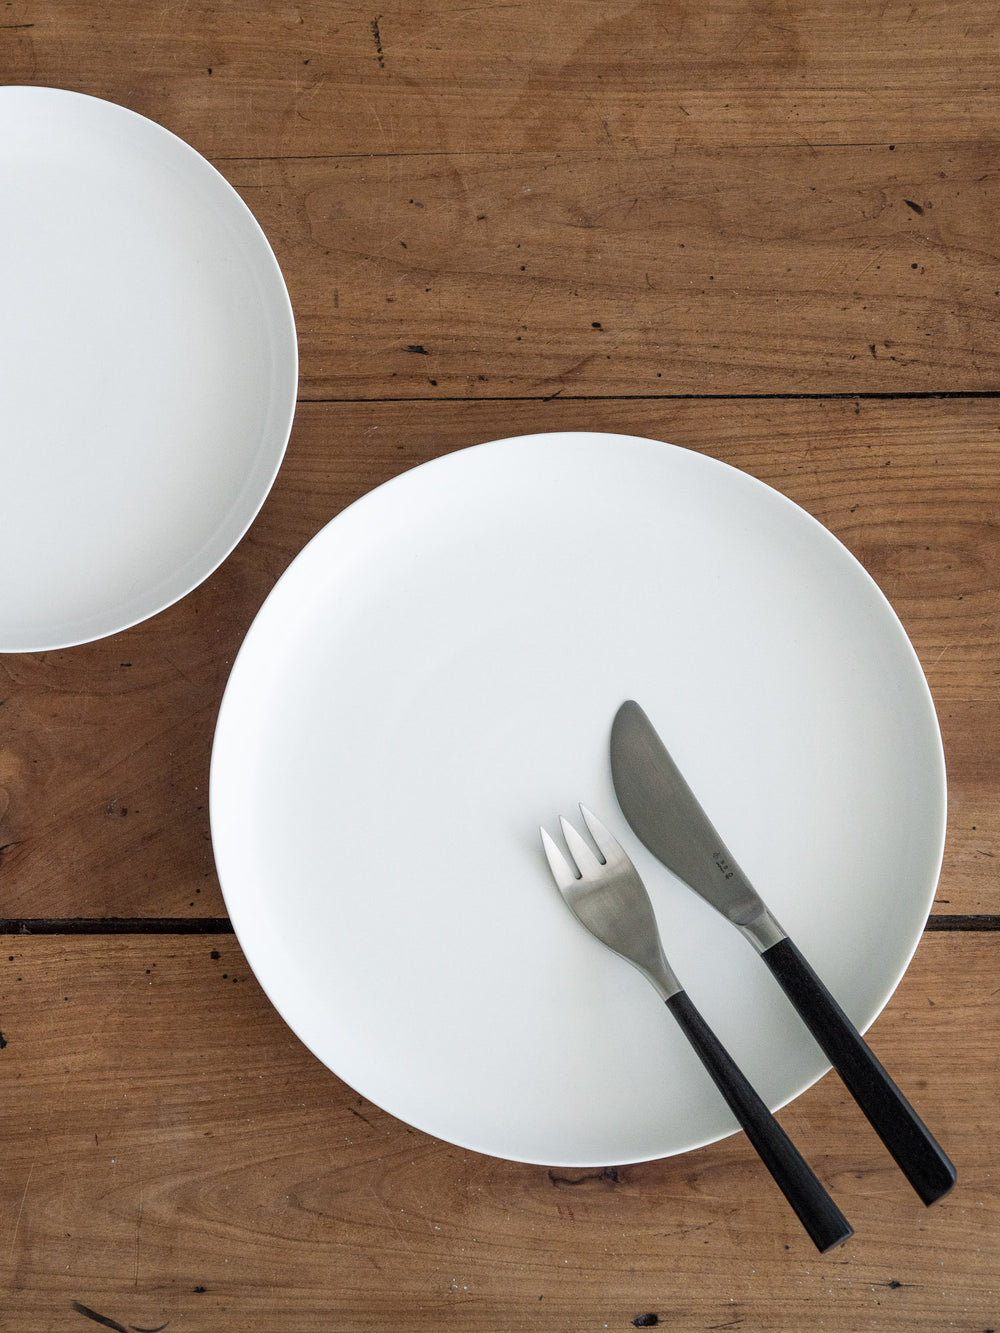 ReIRABO Dinner Plate – Quiet White